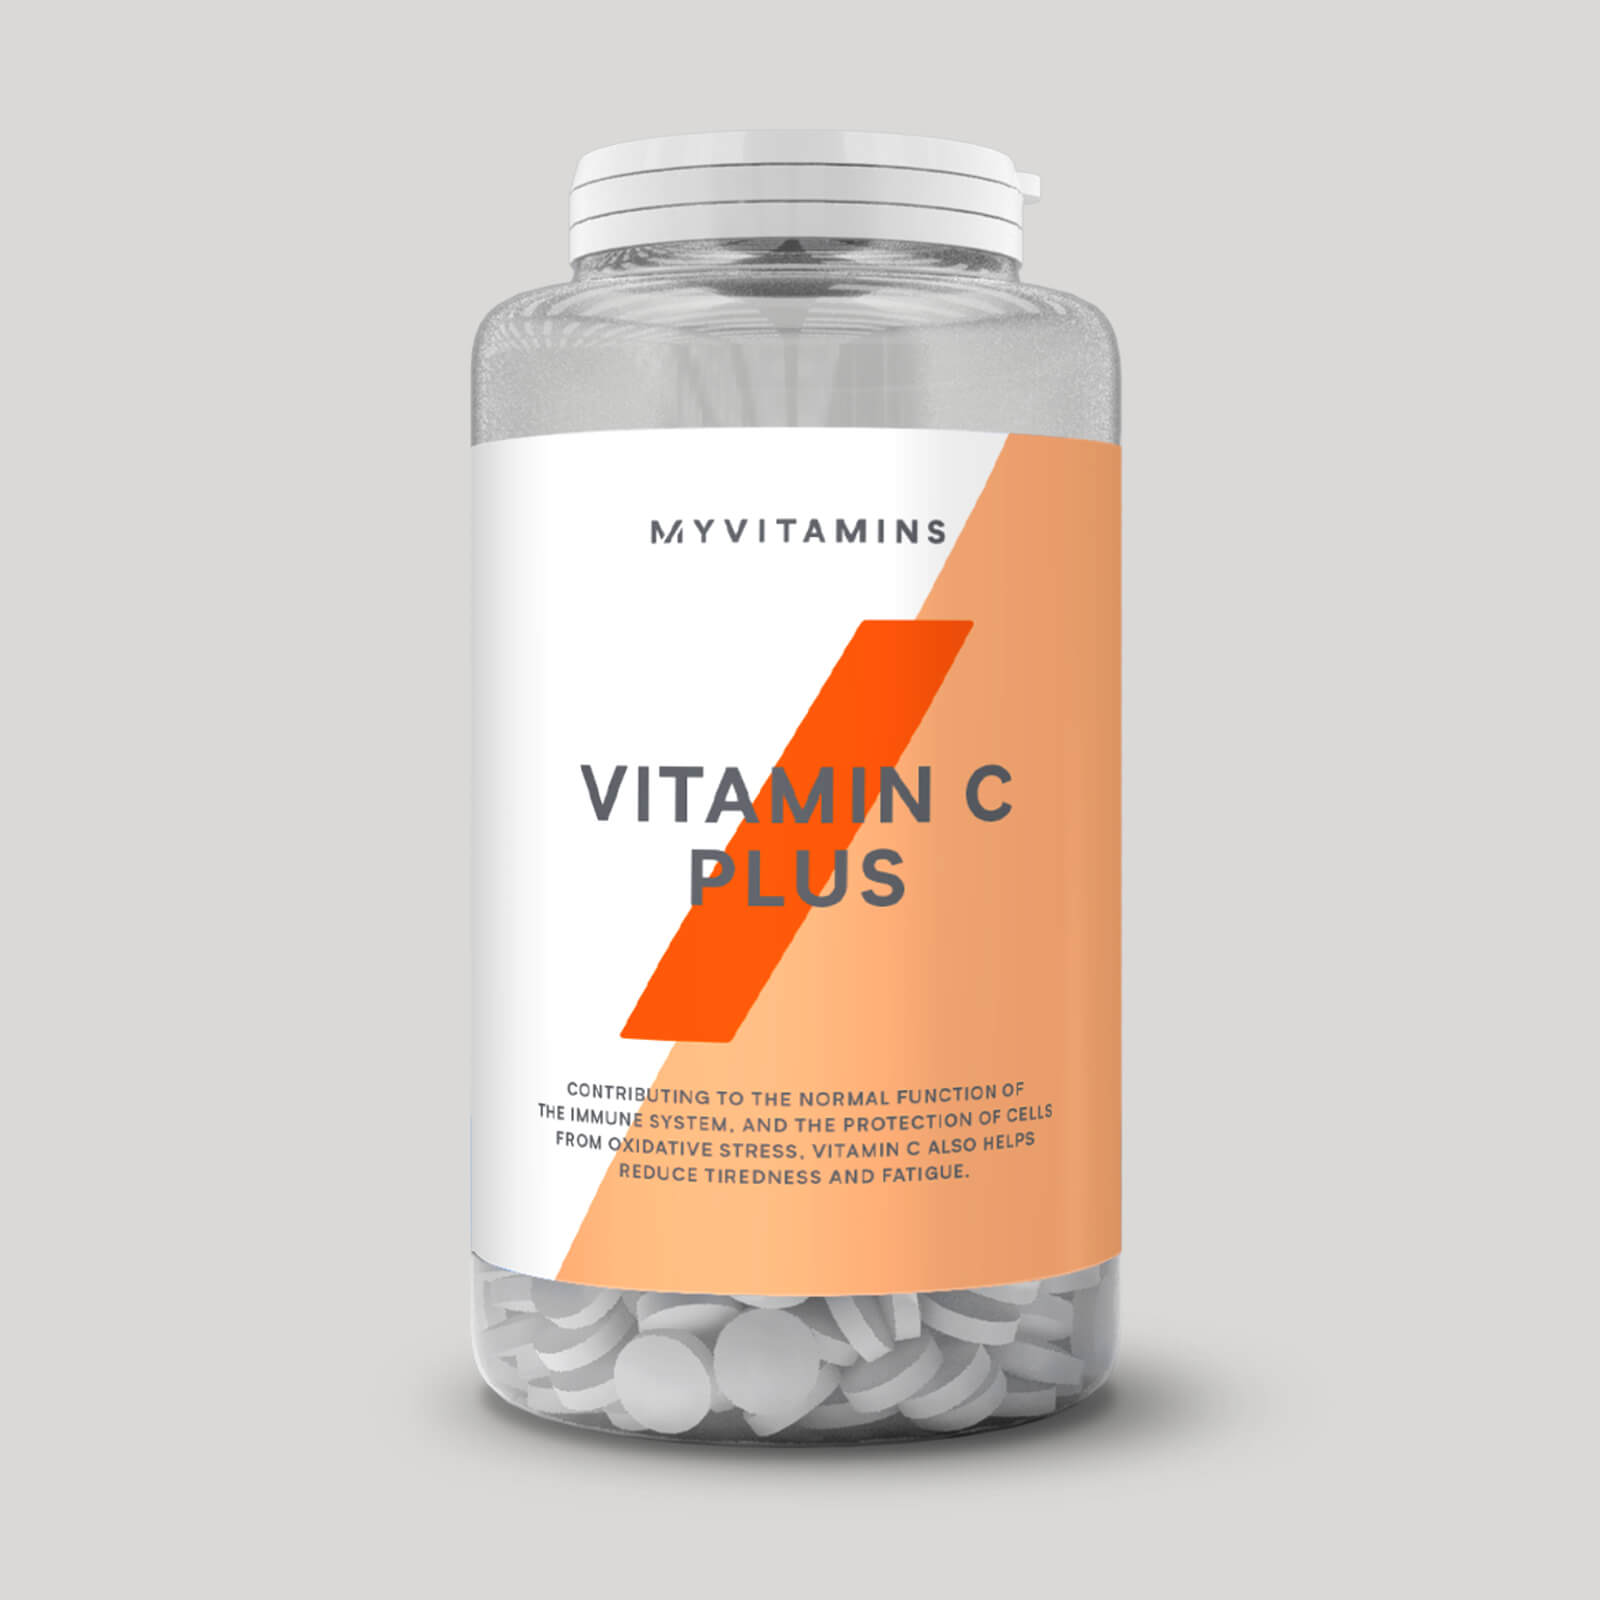 Myprotein Vitamine C Plus Tabletten - 60tabletten